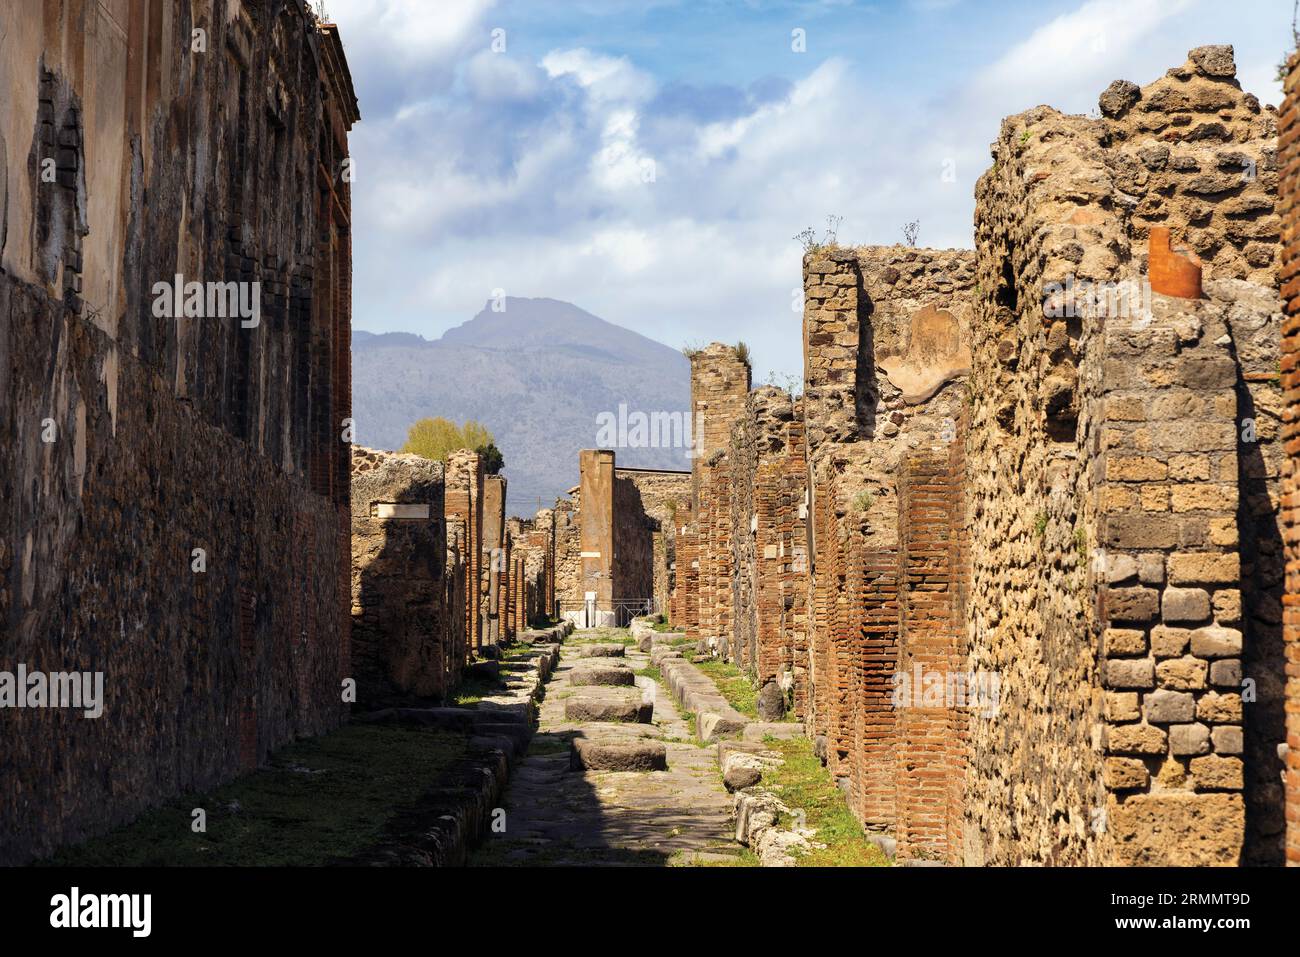 Sito archeologico di Pompei, Campania, Italia. Strada scavata con pietre a gradini. Pompei, Ercolano e Torre Annunziata sono collettivamente des Foto Stock